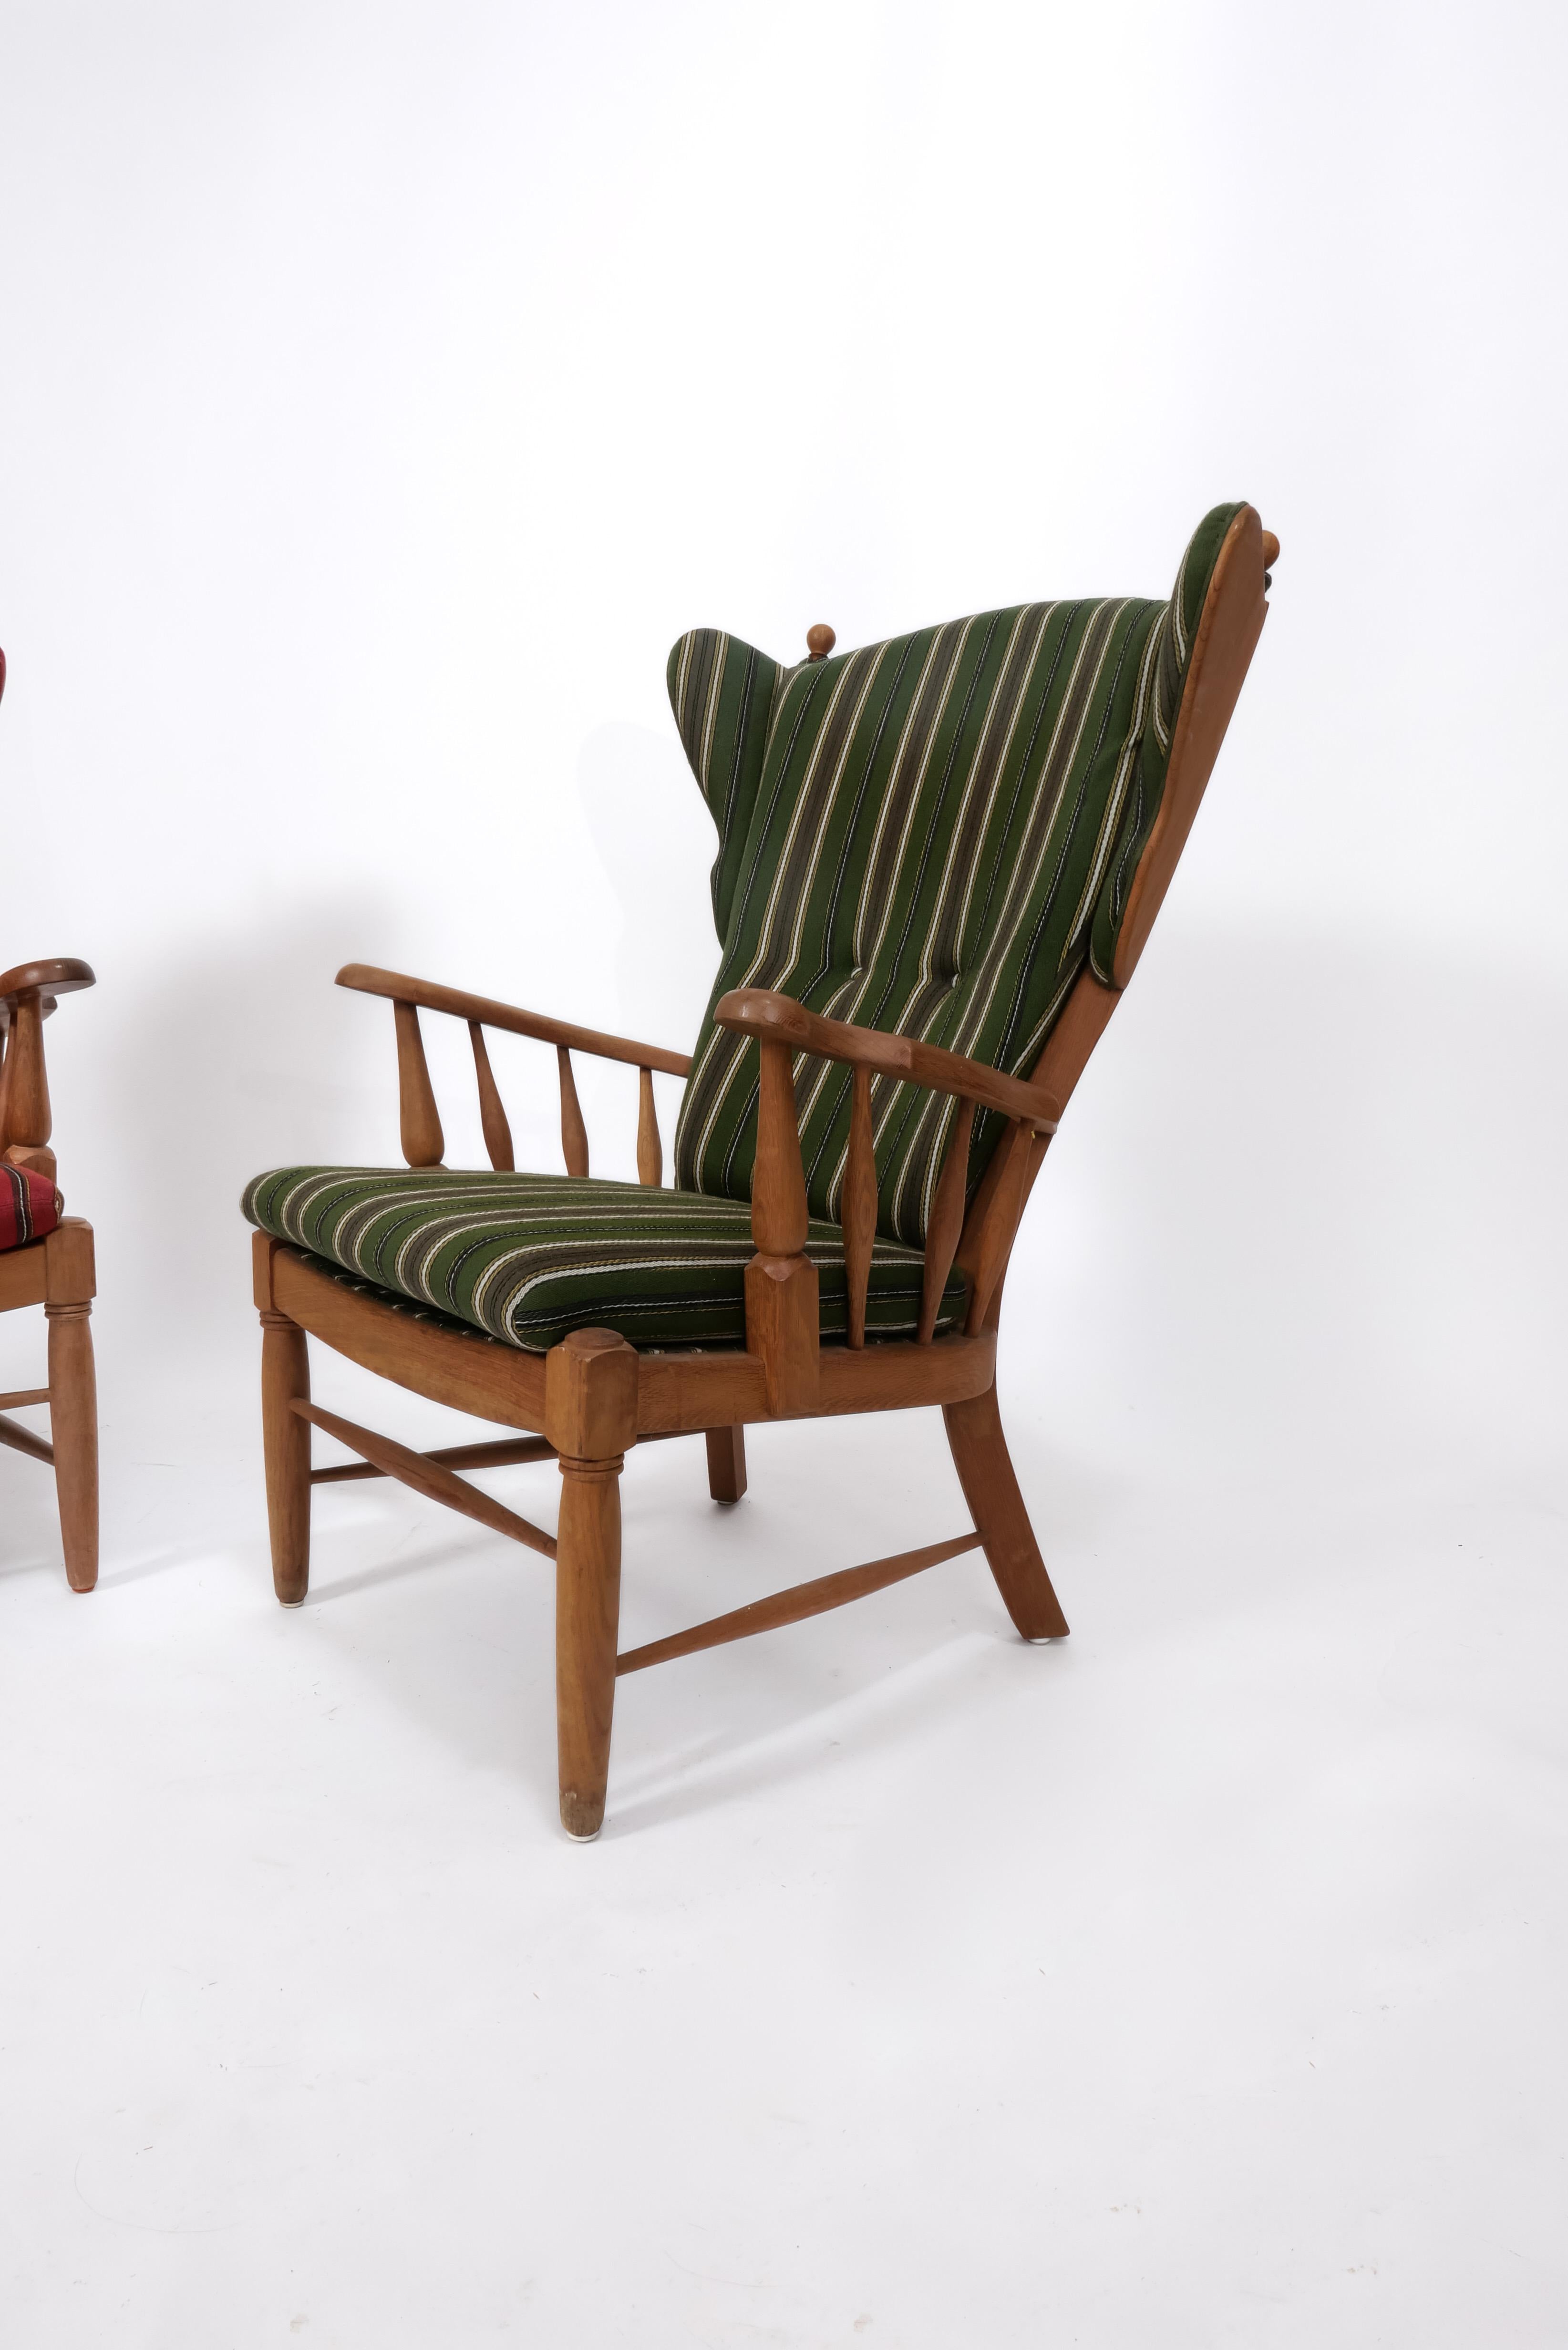 Einzigartiges Paar geschnitzter Eichen-Lounge-Stühle, kürzlich aus Dänemark importiert. Die hohen Rückenlehnen machen diese Stühle besonders bequem für den Einsatz am Kamin oder in einem Wohnzimmer. Mit ihren skurrilen Details sind diese Stühle ein